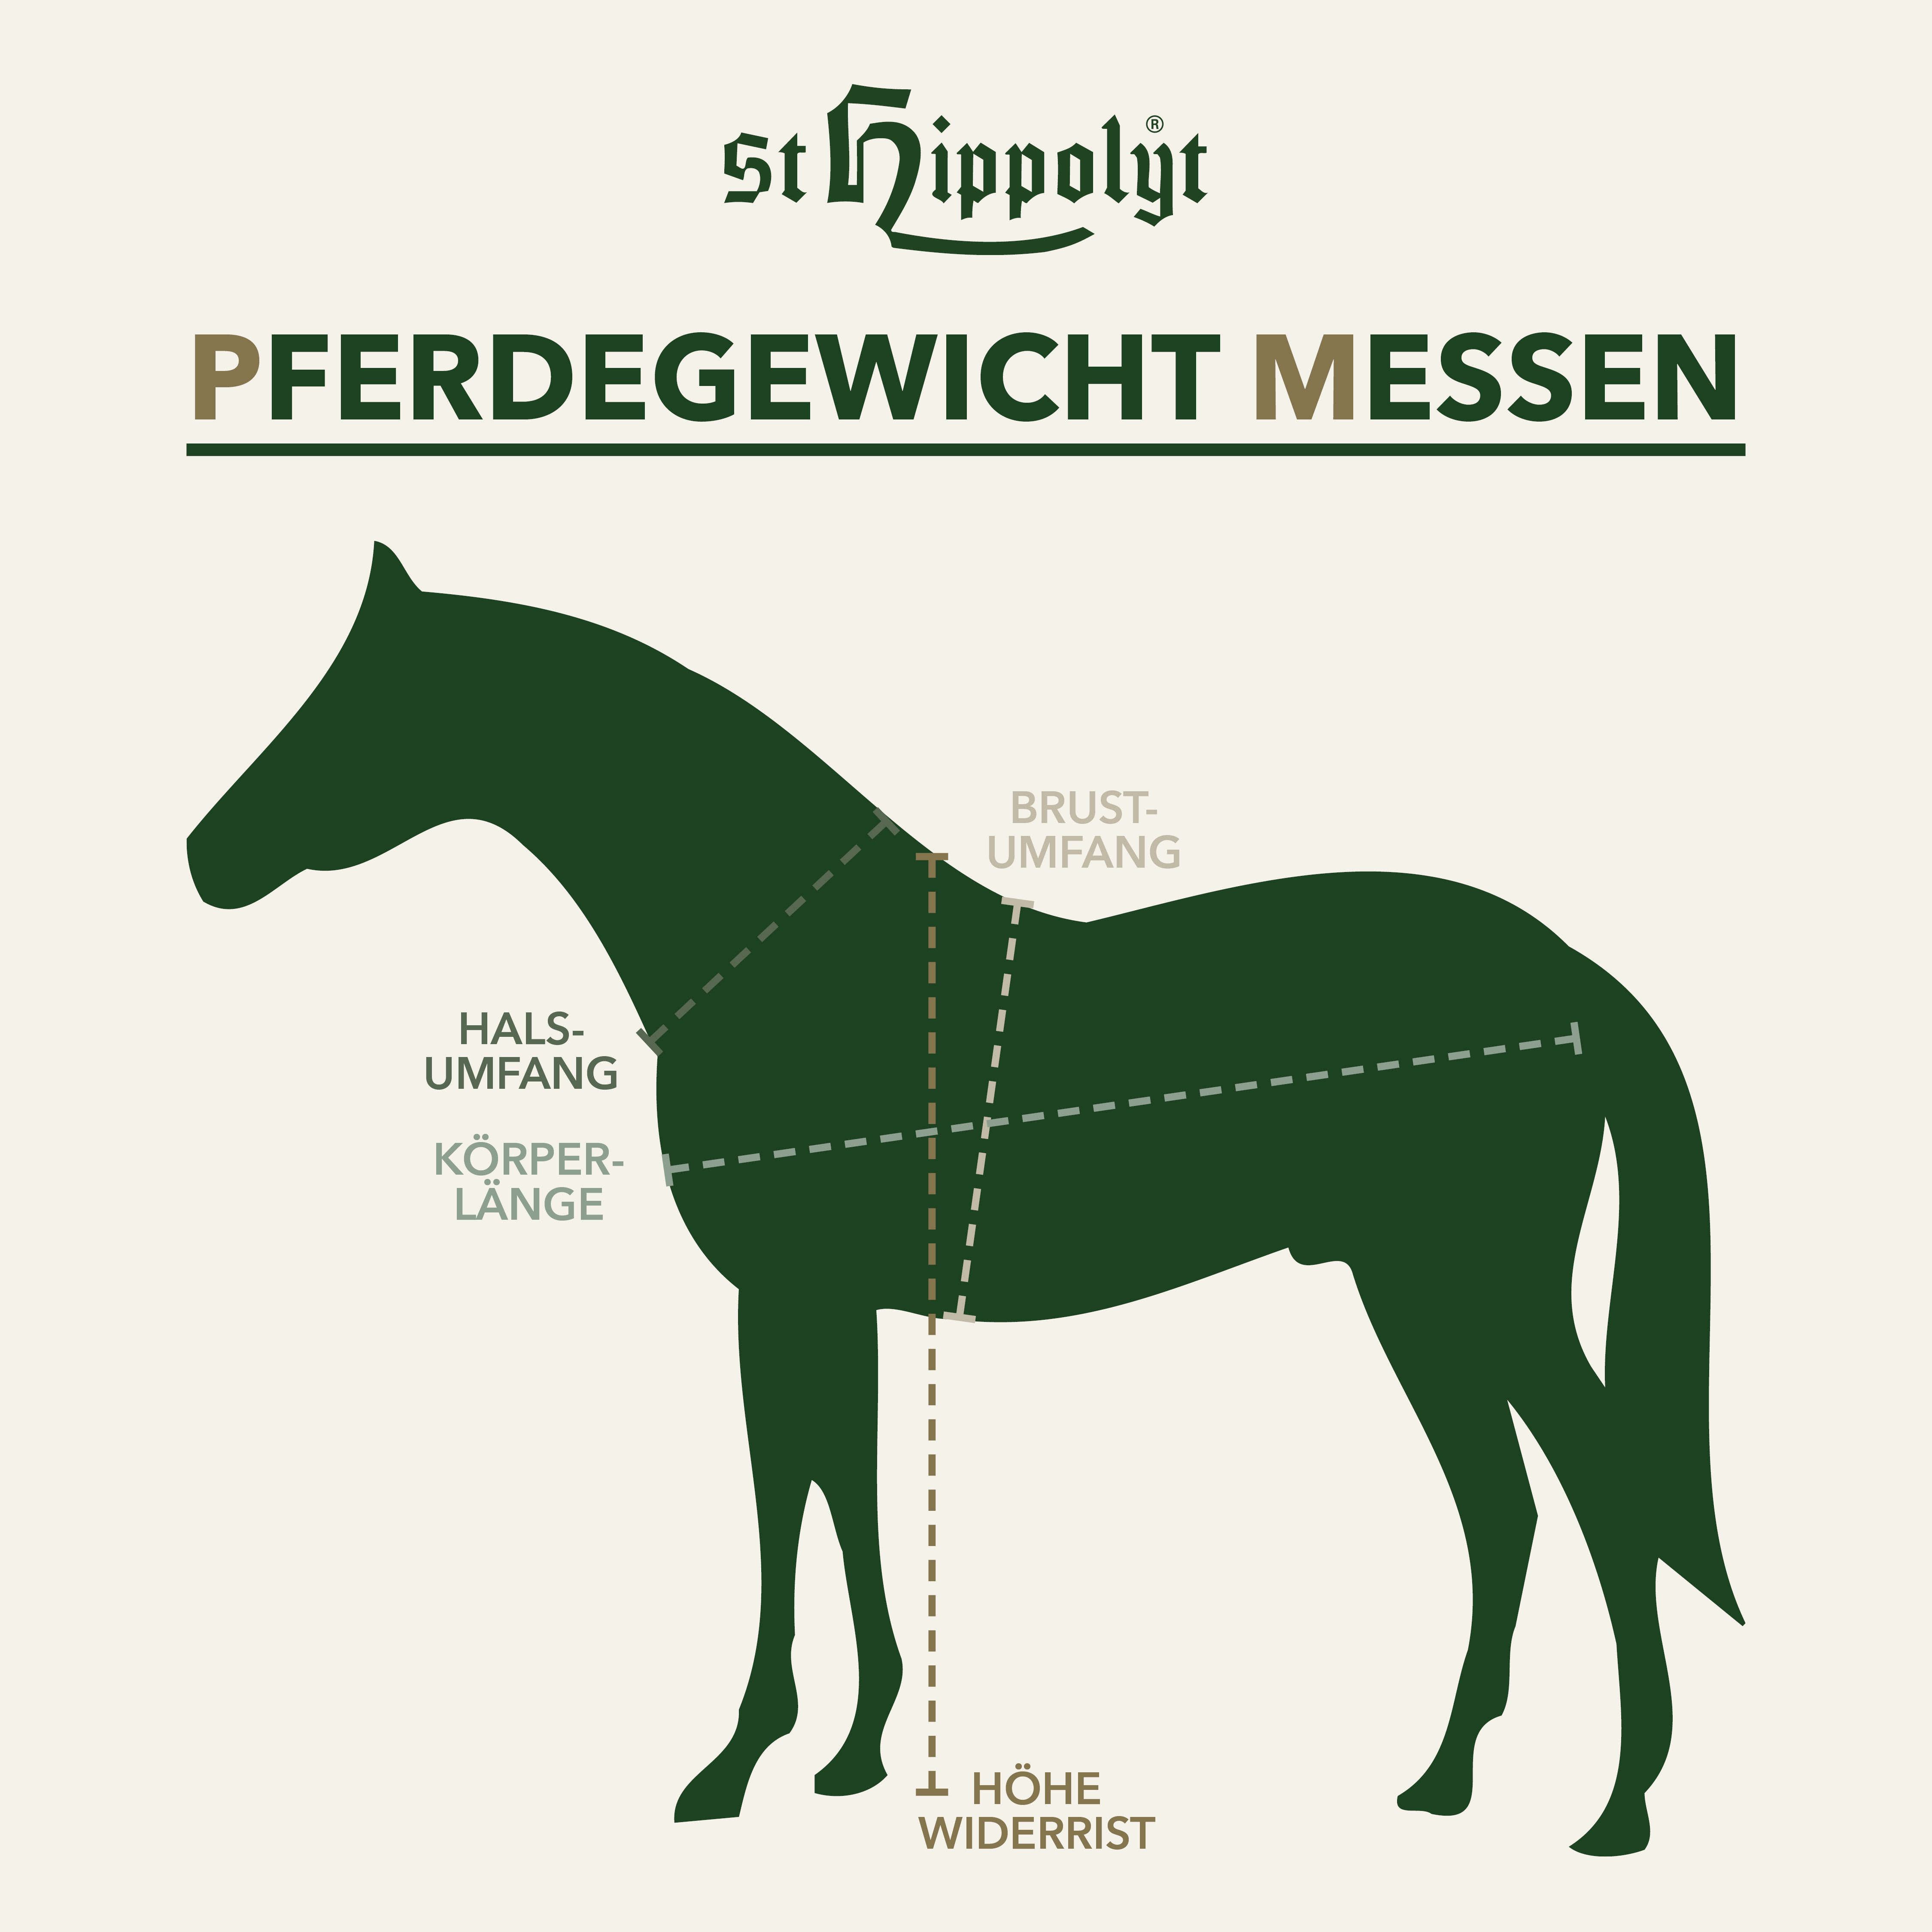 St. Hippolyt Pferdegewicht messen